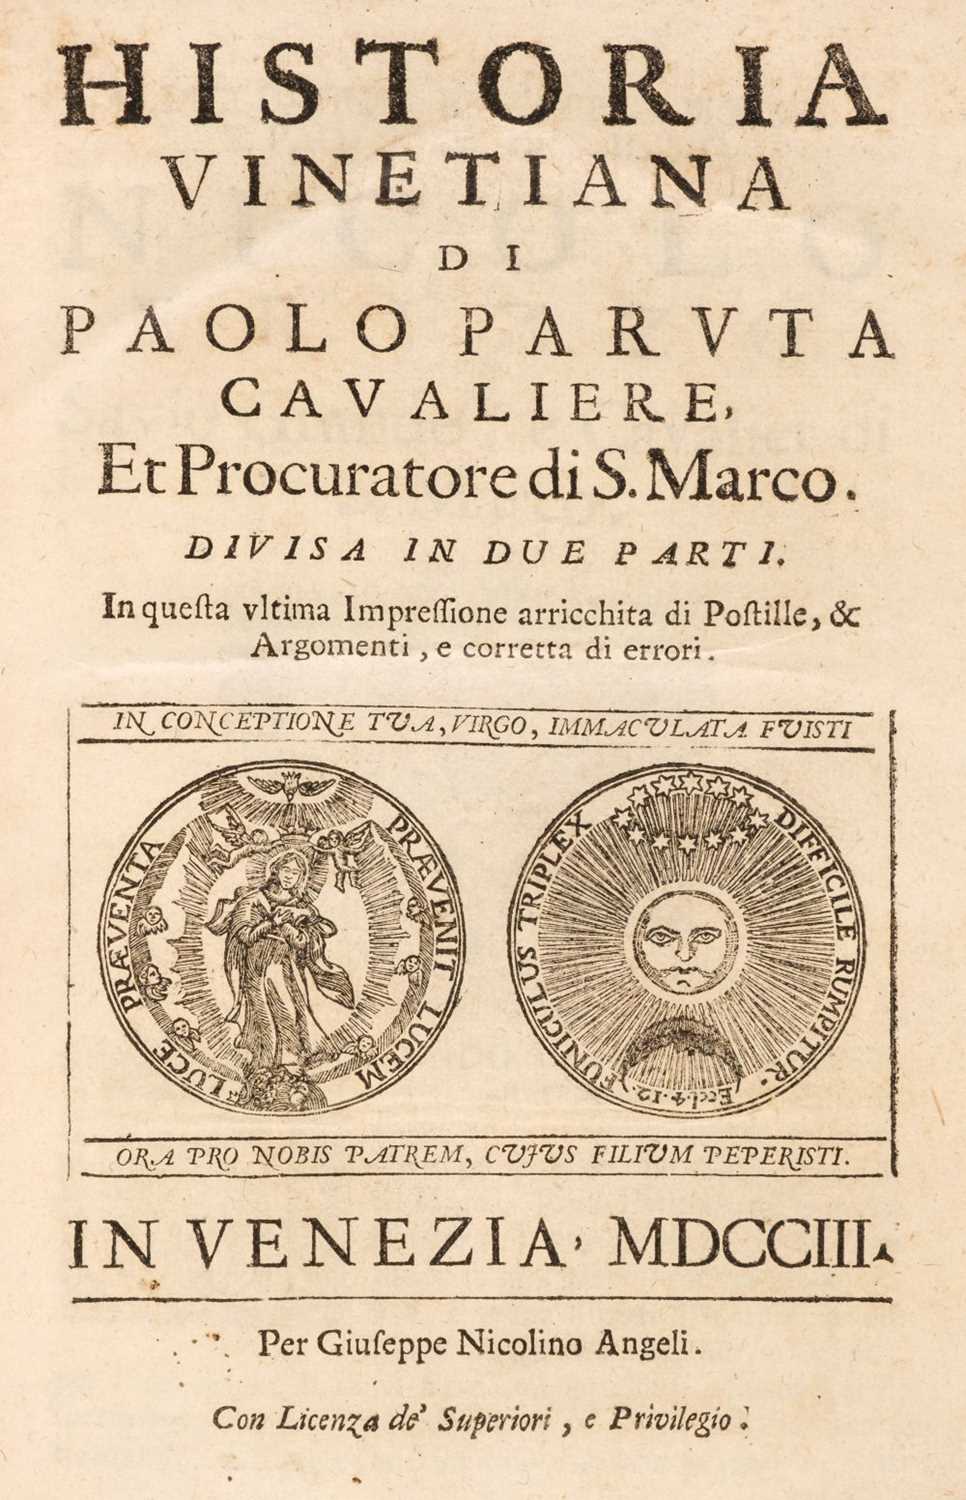 Lot 22 - Paruta (Paolo). Historia Vinetiana, 2 parts in 1m, 1703